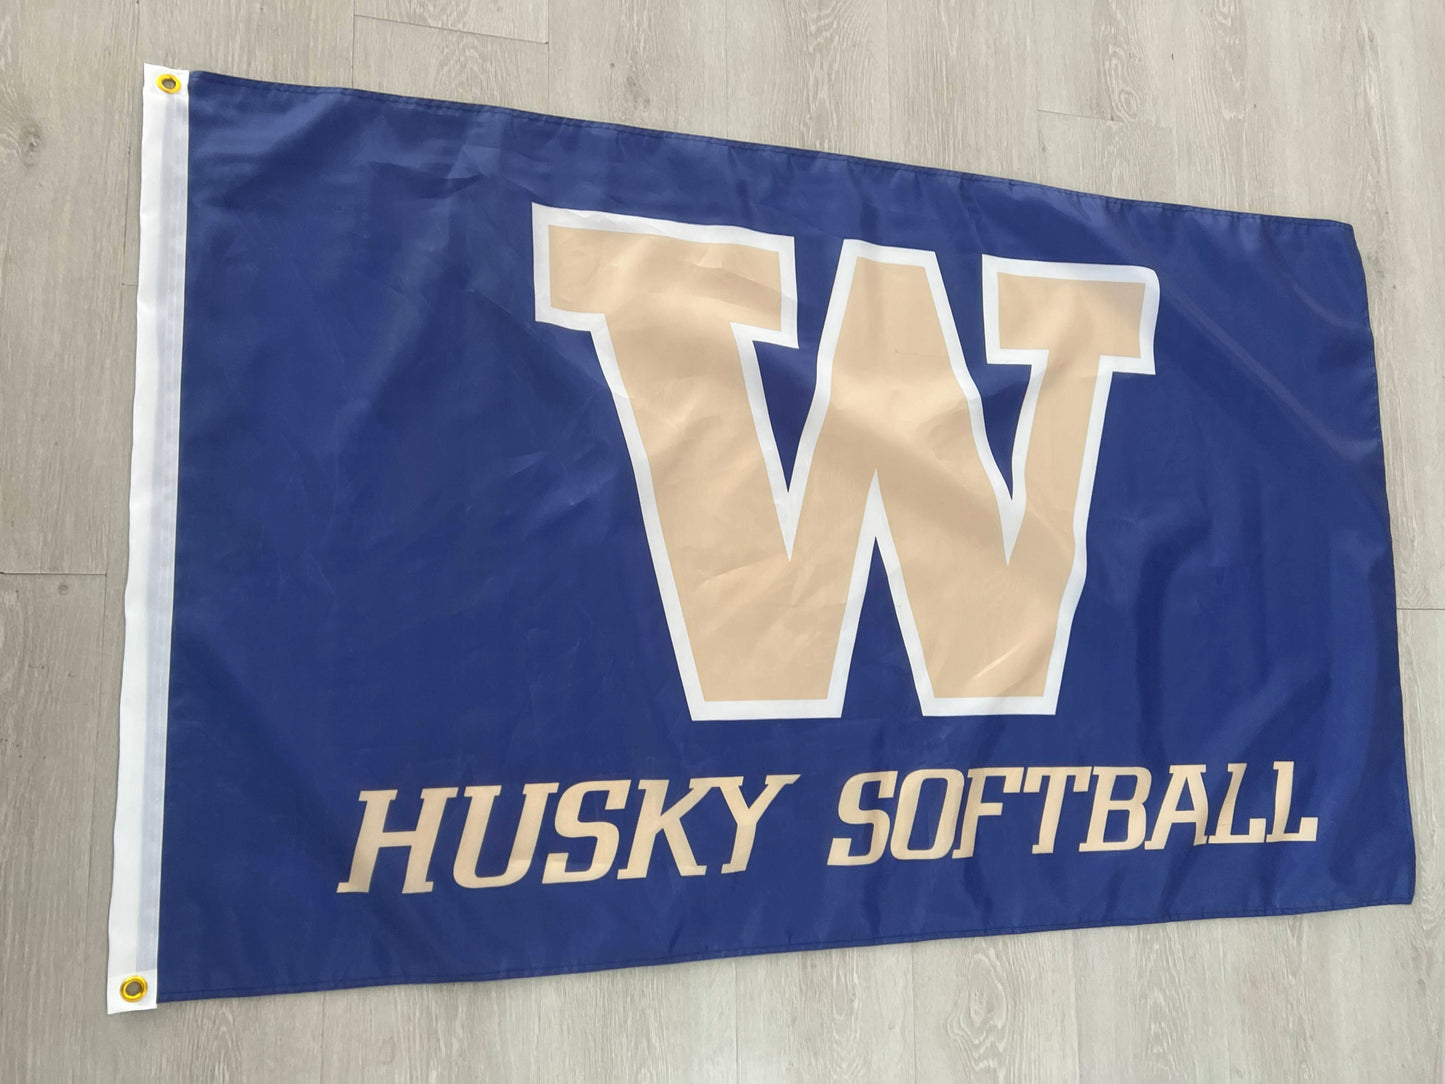 Washington Husky Softball 3x5 Flag